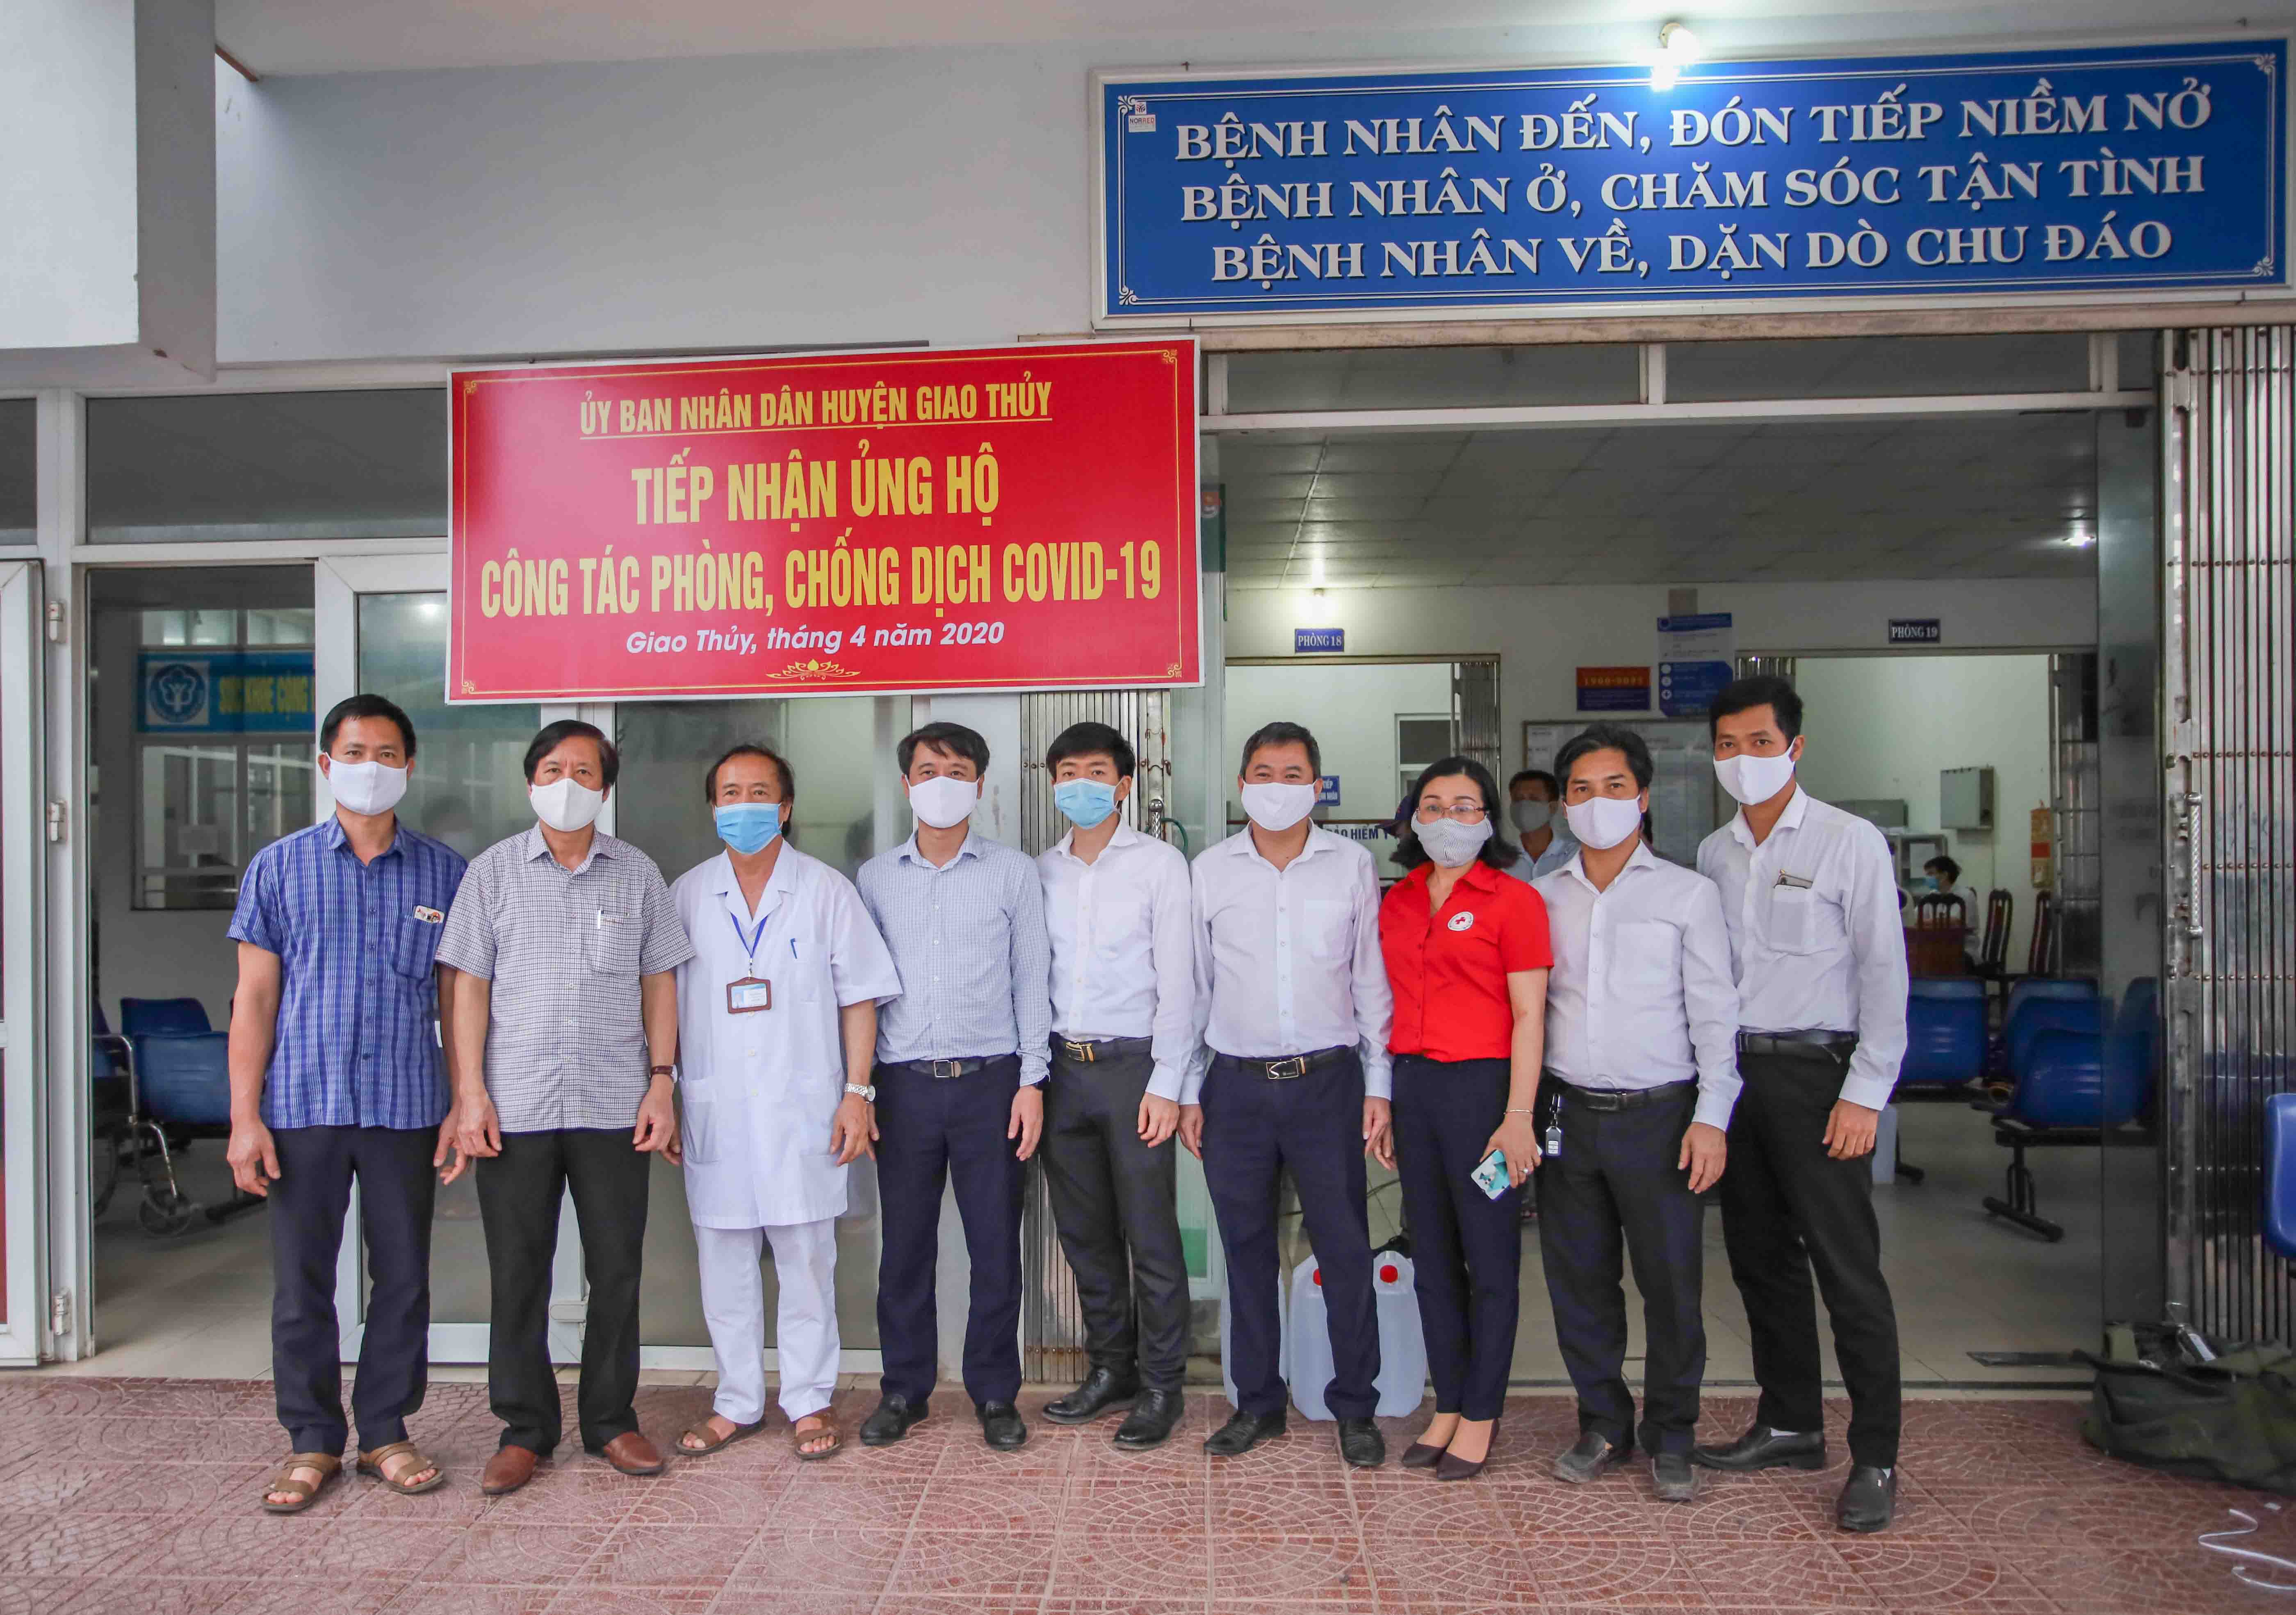 Vietcombank Nam Định trao tặng 4 buồng khử khuẩn cho các Bệnh viện đa khoa và Trung tâm y tế huyện tại tỉnh Nam Định